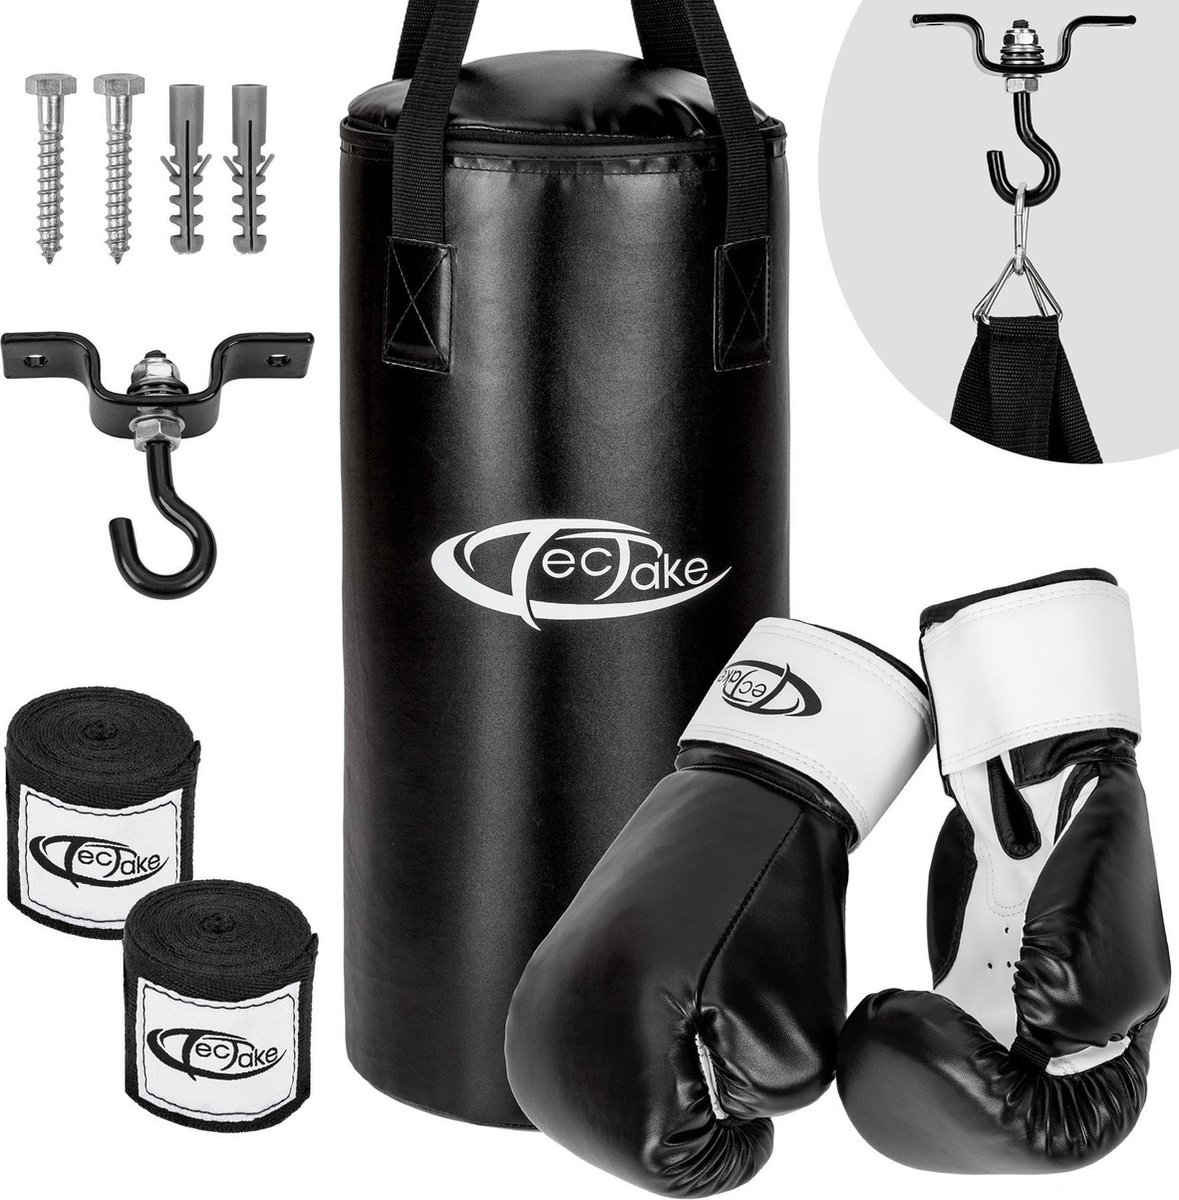 tectake® - Bokszak met handschoenen - complete set - Cardio - Fitness - Boksen - 402273